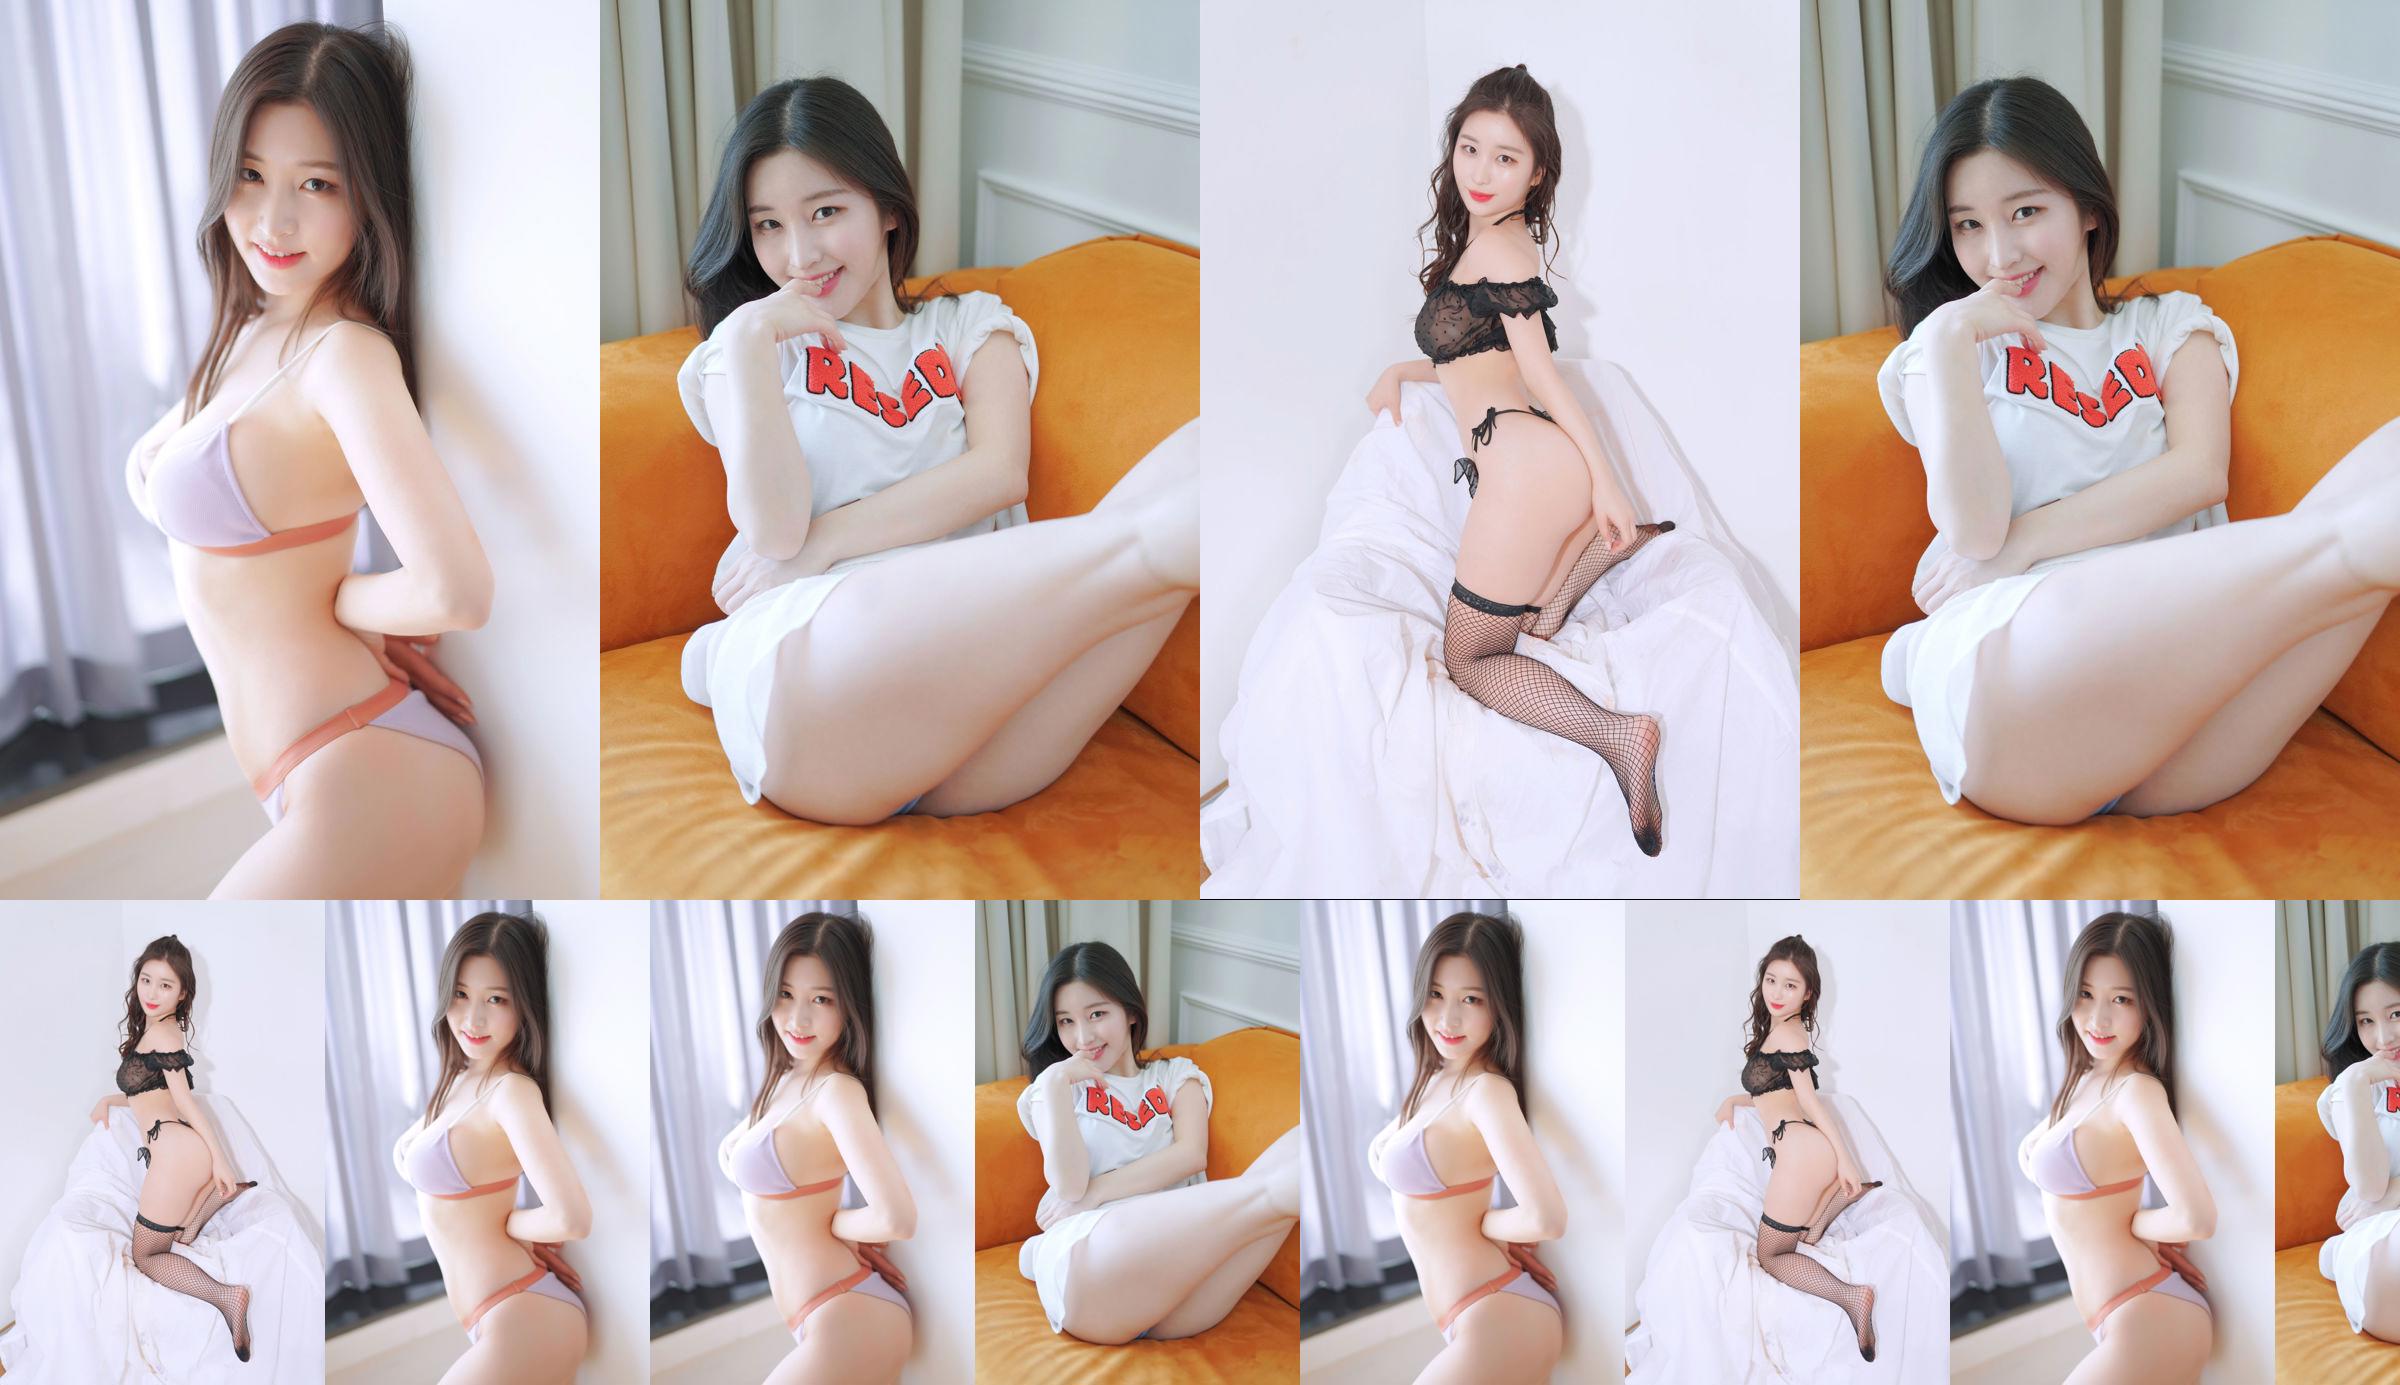 [Bosque rosa] - Najung Vol.1 Sunny Side - Kim Na Jung No.b61f4b Página 1